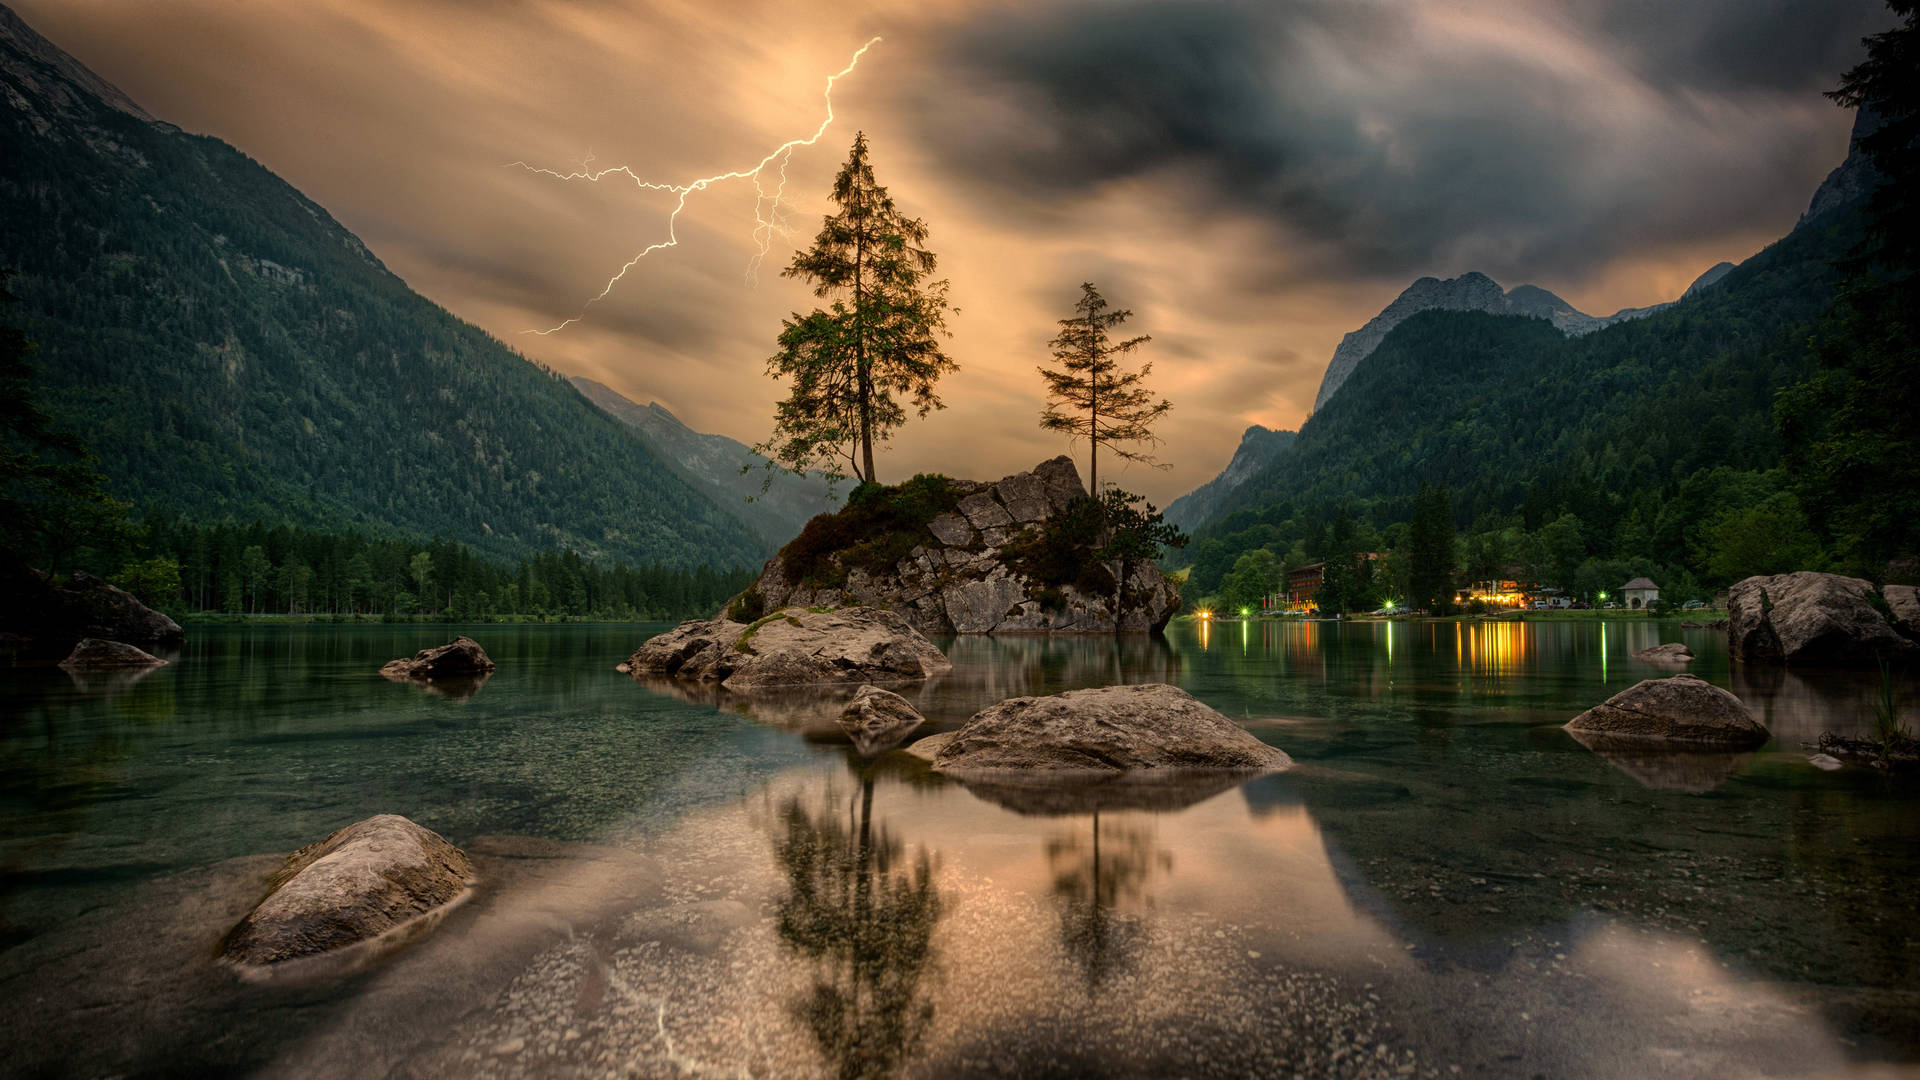 Lightning over the lake wallpaper 2560x1440 - Lake